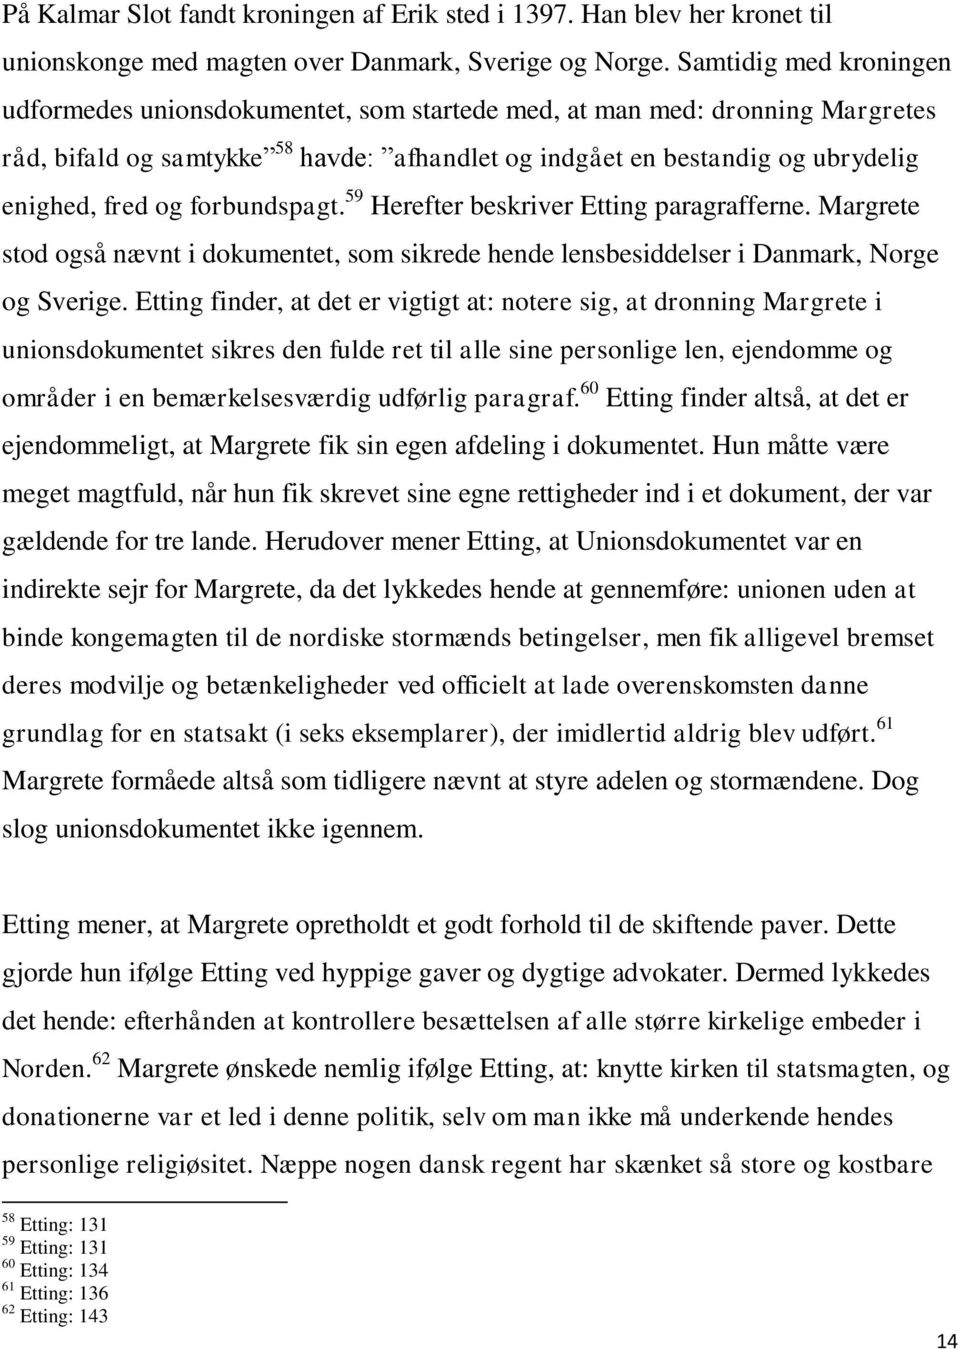 forbundspagt. 59 Herefter beskriver Etting paragrafferne. Margrete stod også nævnt i dokumentet, som sikrede hende lensbesiddelser i Danmark, Norge og Sverige.